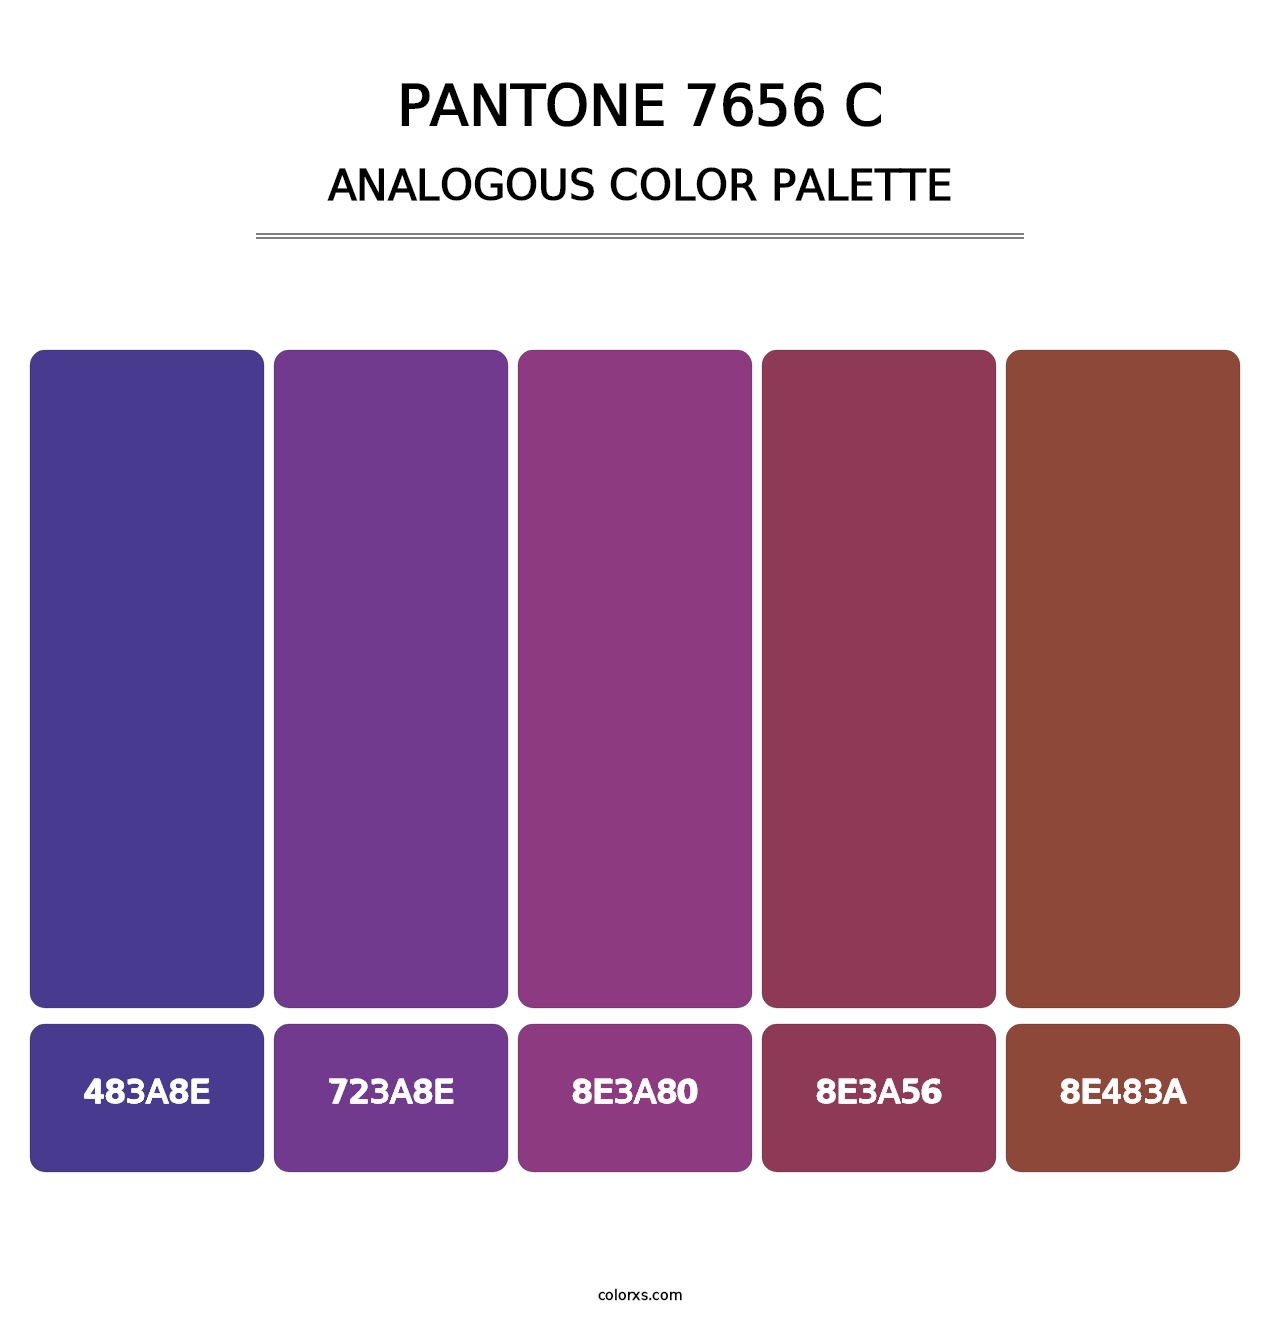 PANTONE 7656 C - Analogous Color Palette